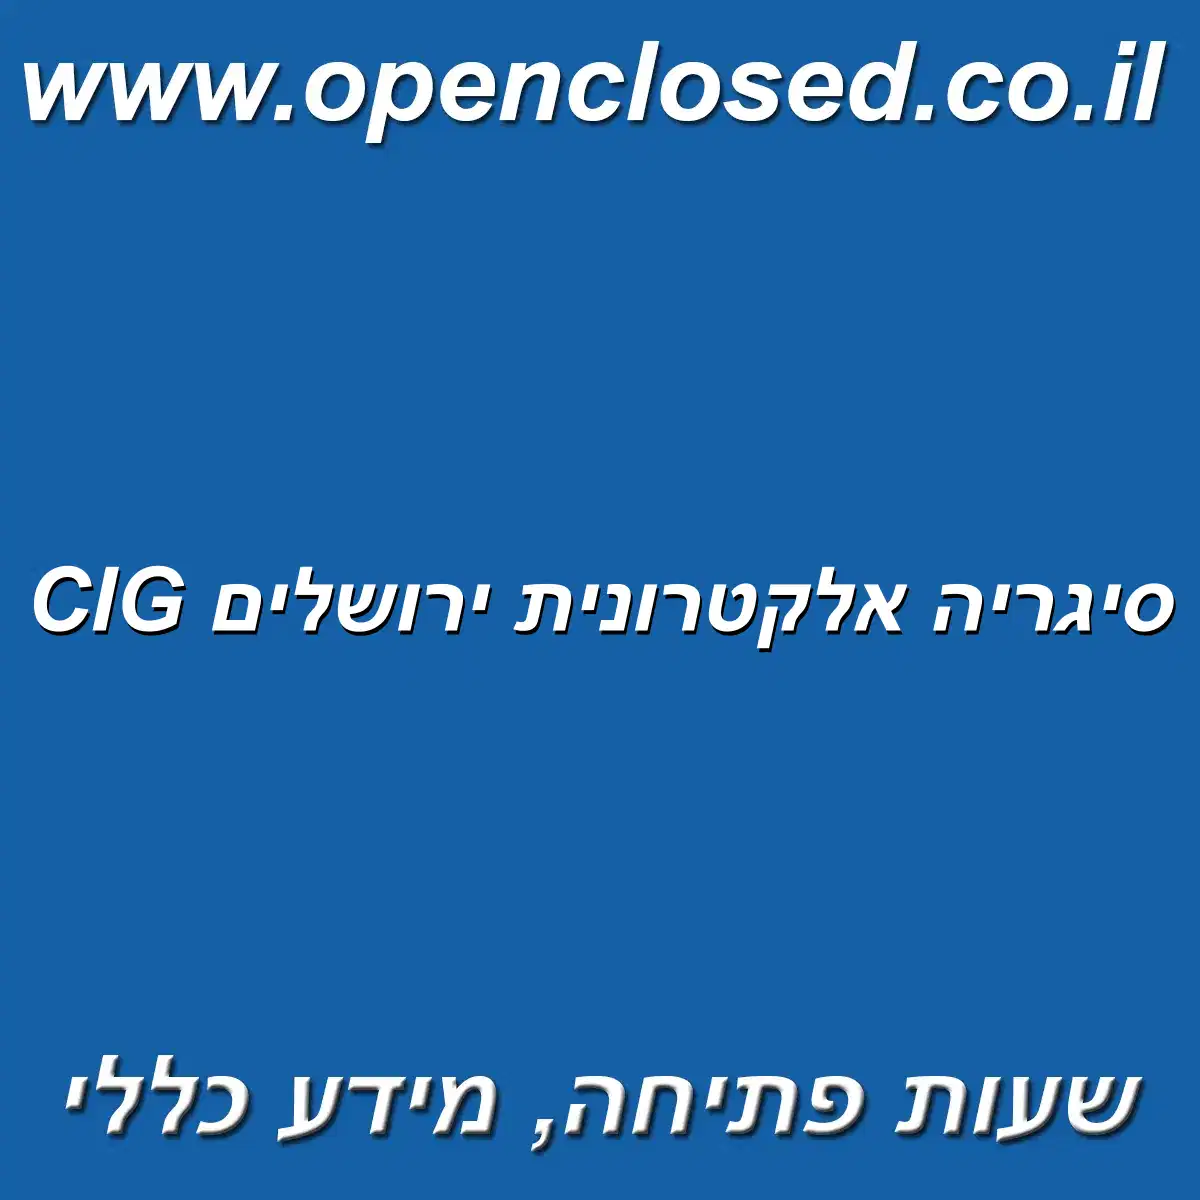 CIG סיגריה אלקטרונית ירושלים